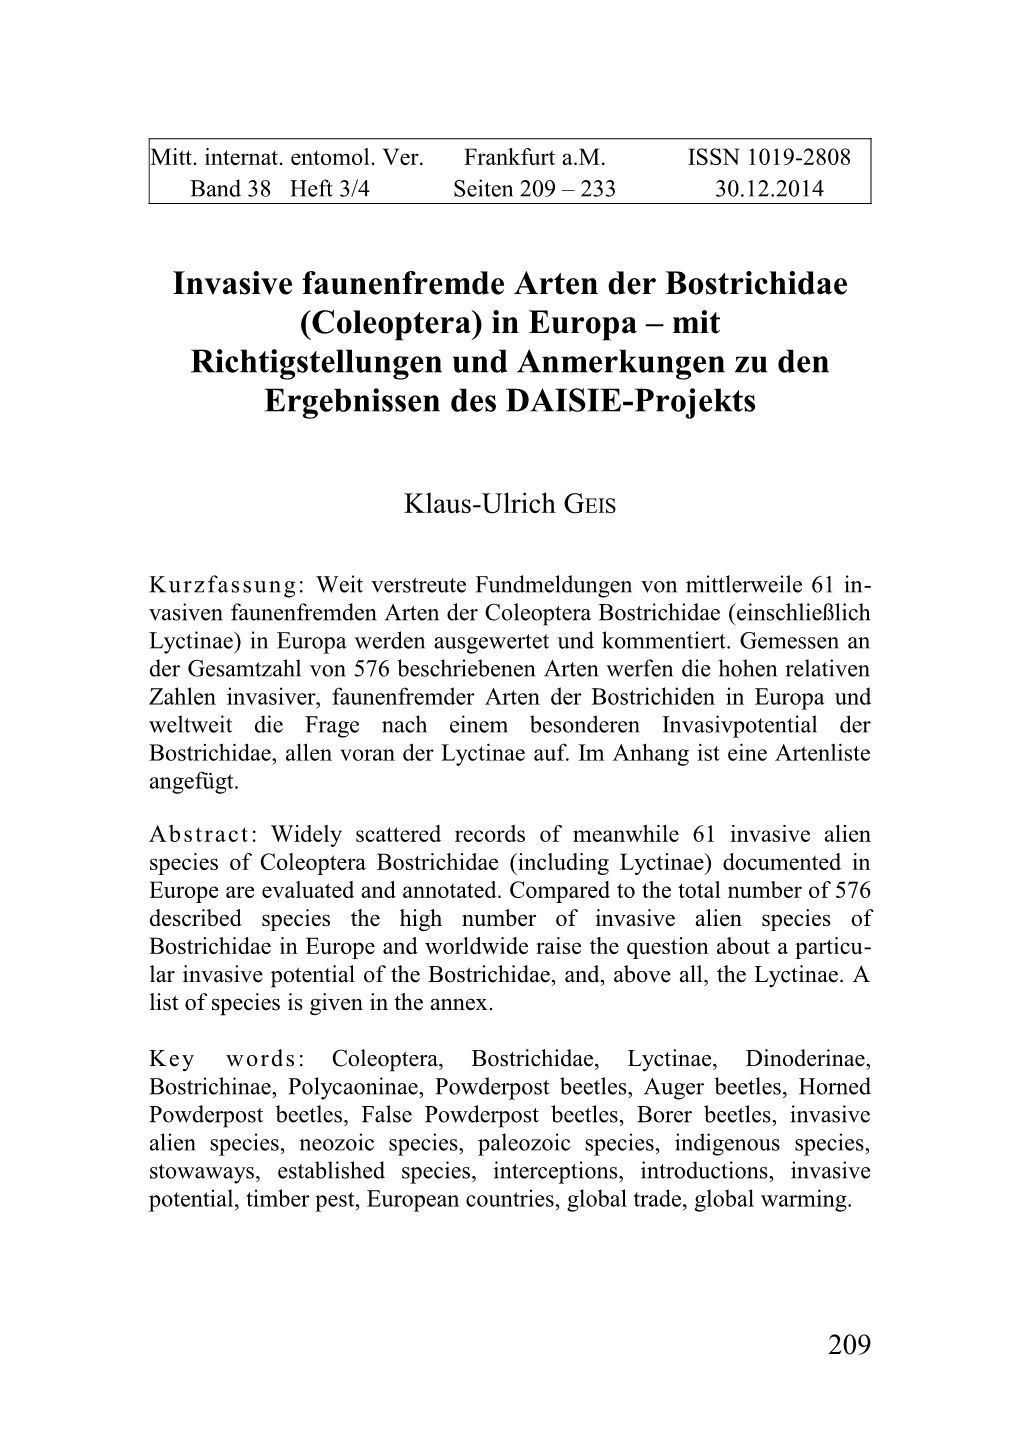 Invasive Faunenfremde Arten Der Bostrichidae (Coleoptera) in Europa – Mit Richtigstellungen Und Anmerkungen Zu Den Ergebnissen Des DAISIE-Projekts